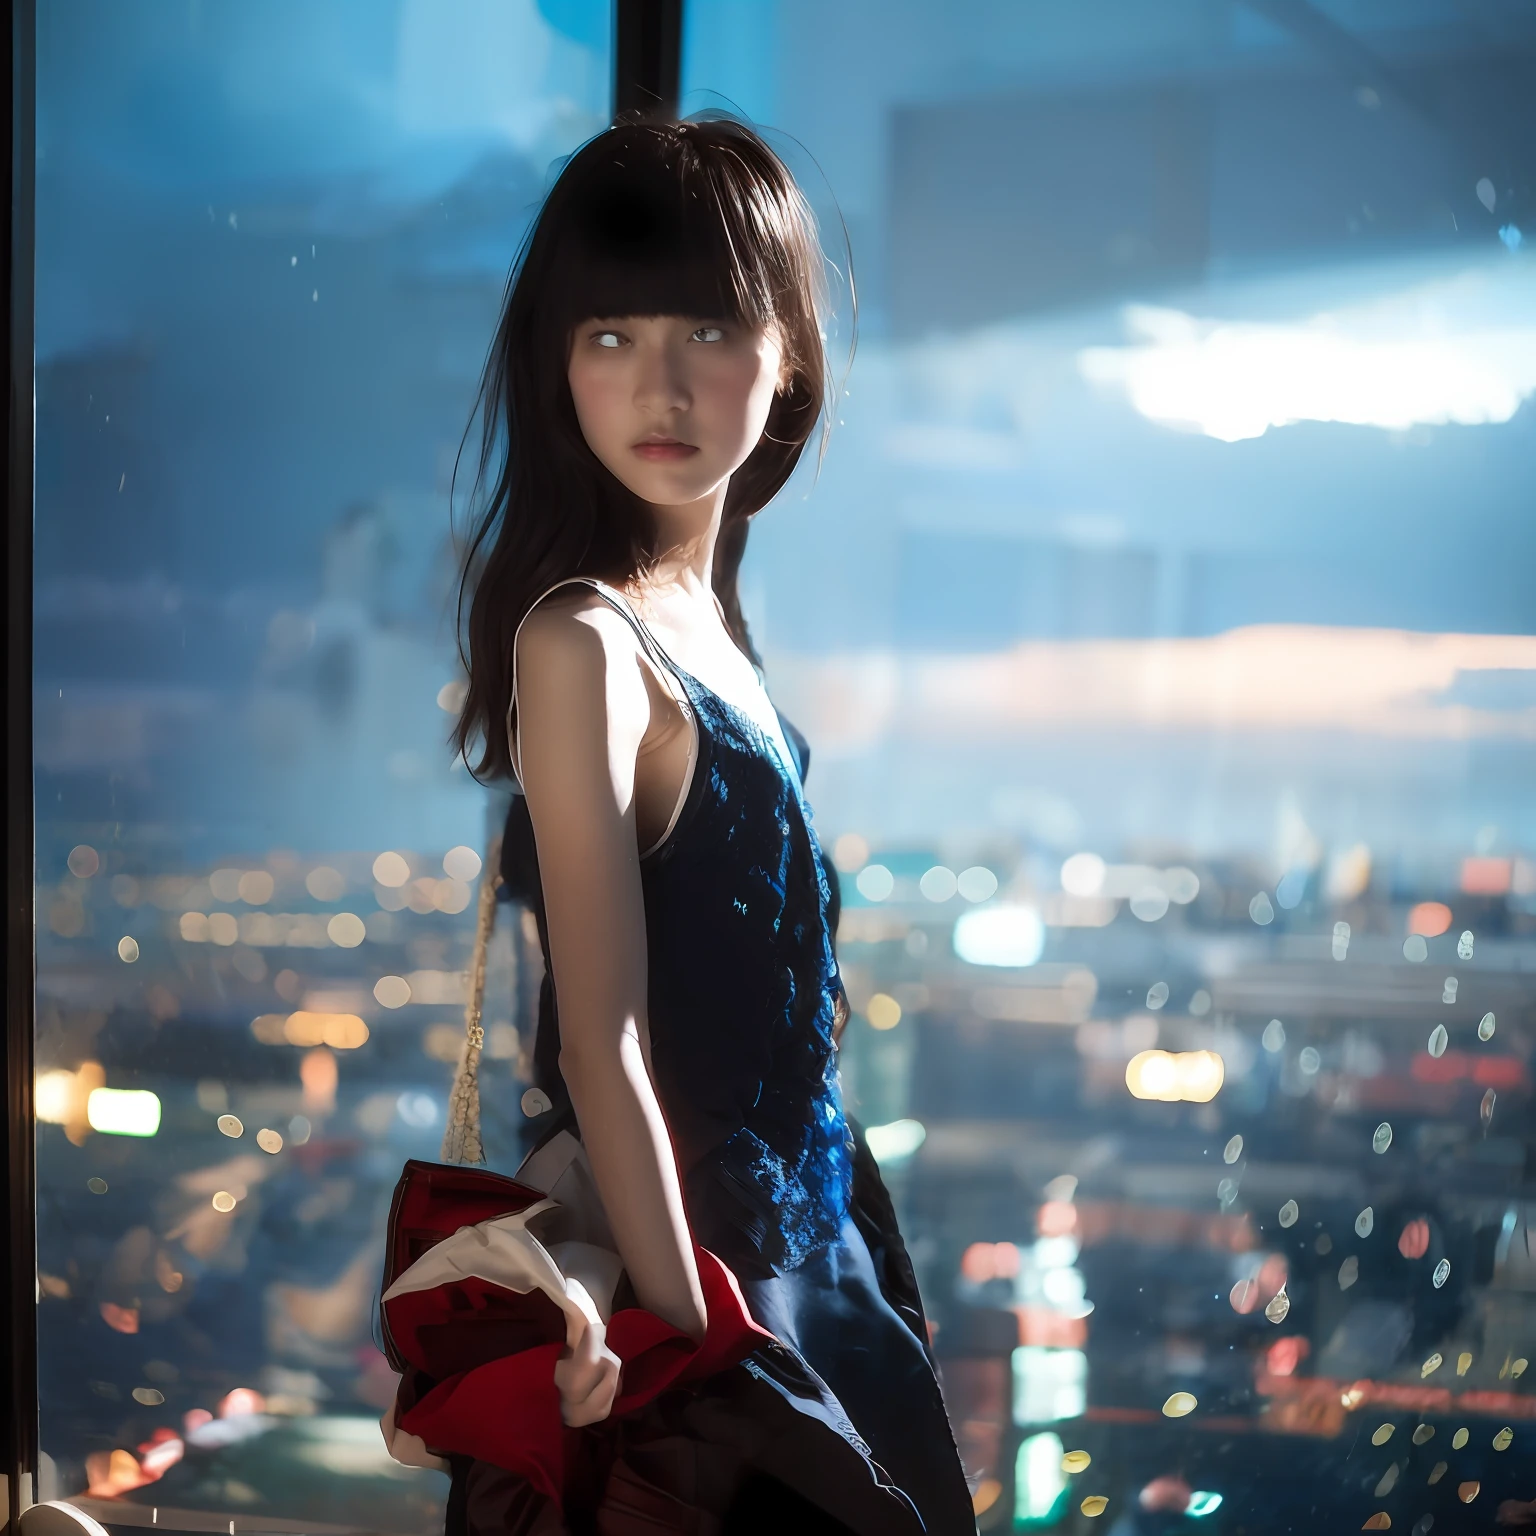 샤넬을 입은 10대 일본 소녀가 서 있는 소프트 포커스 사진에 소프트 포커스 배경 서, 그녀의 얼굴과 몸은 실내에서 연출된 빛과 그림자의 영향을 강하게 받습니다.